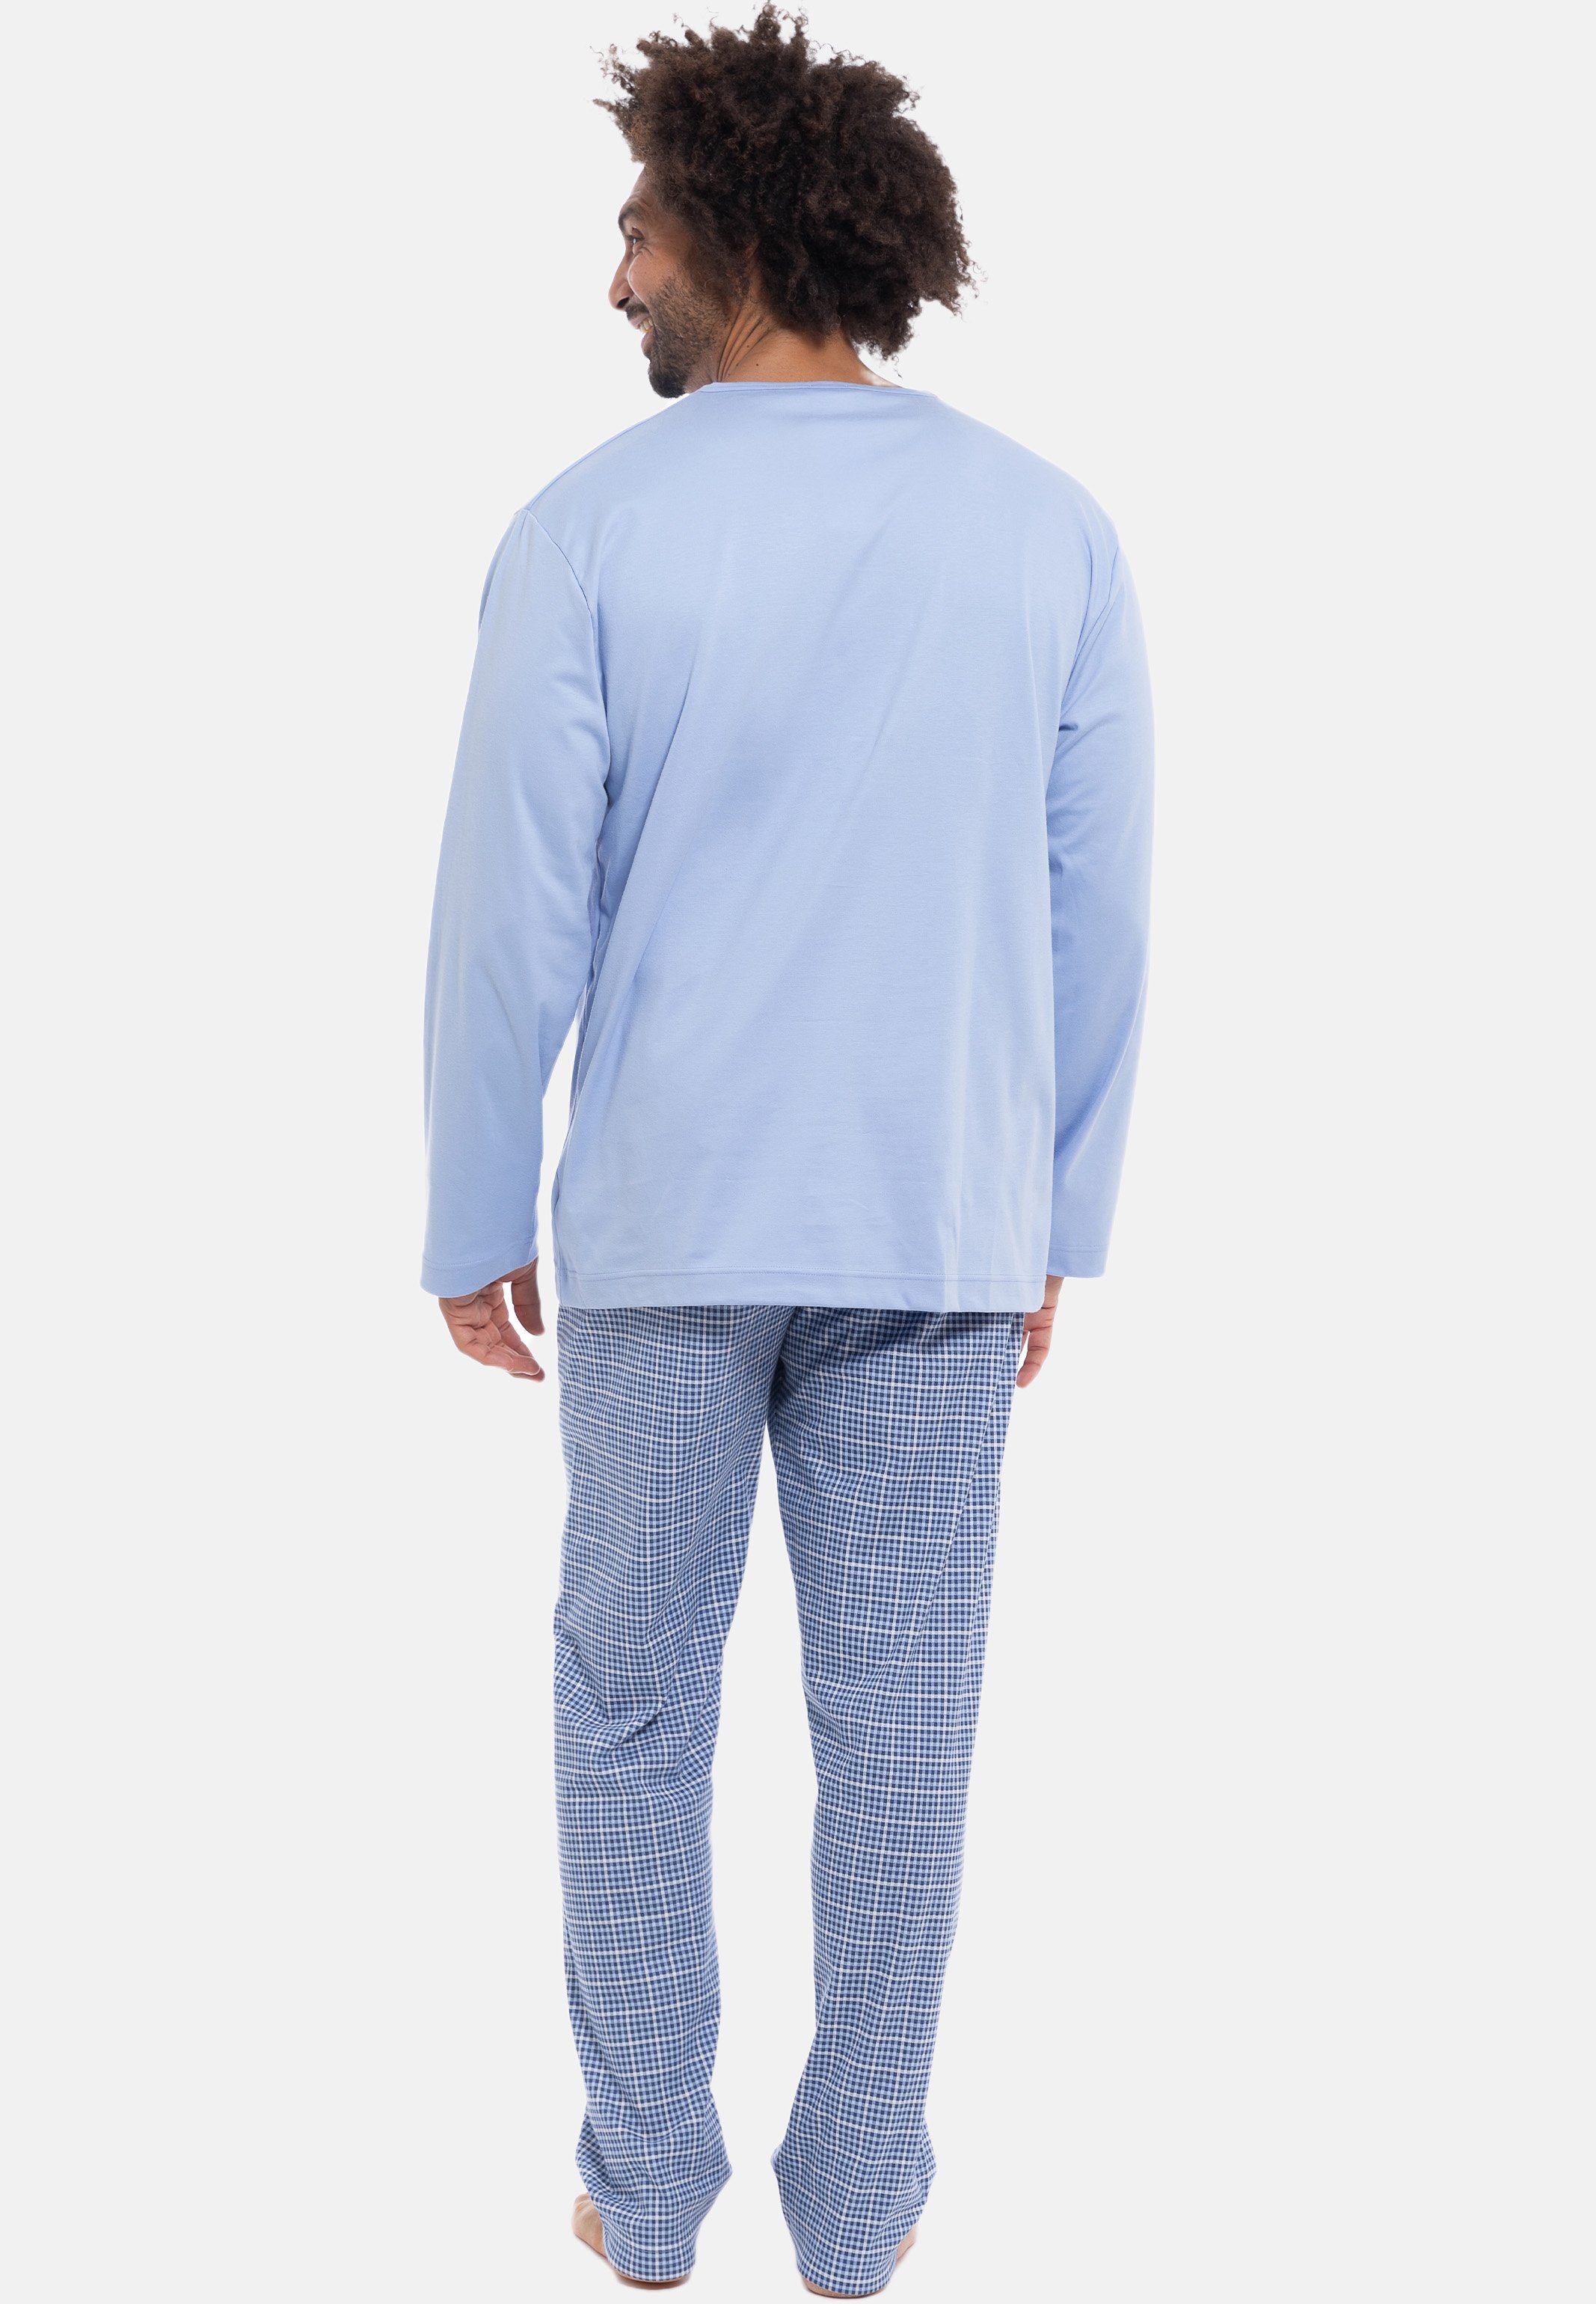 Wäsche/Bademode Nachtwäsche Mey Pyjama Lounge - Nightwear (Set, 2 tlg) Schlafanzug Langarm - Baumwolle - Langarm-Shirt und lange